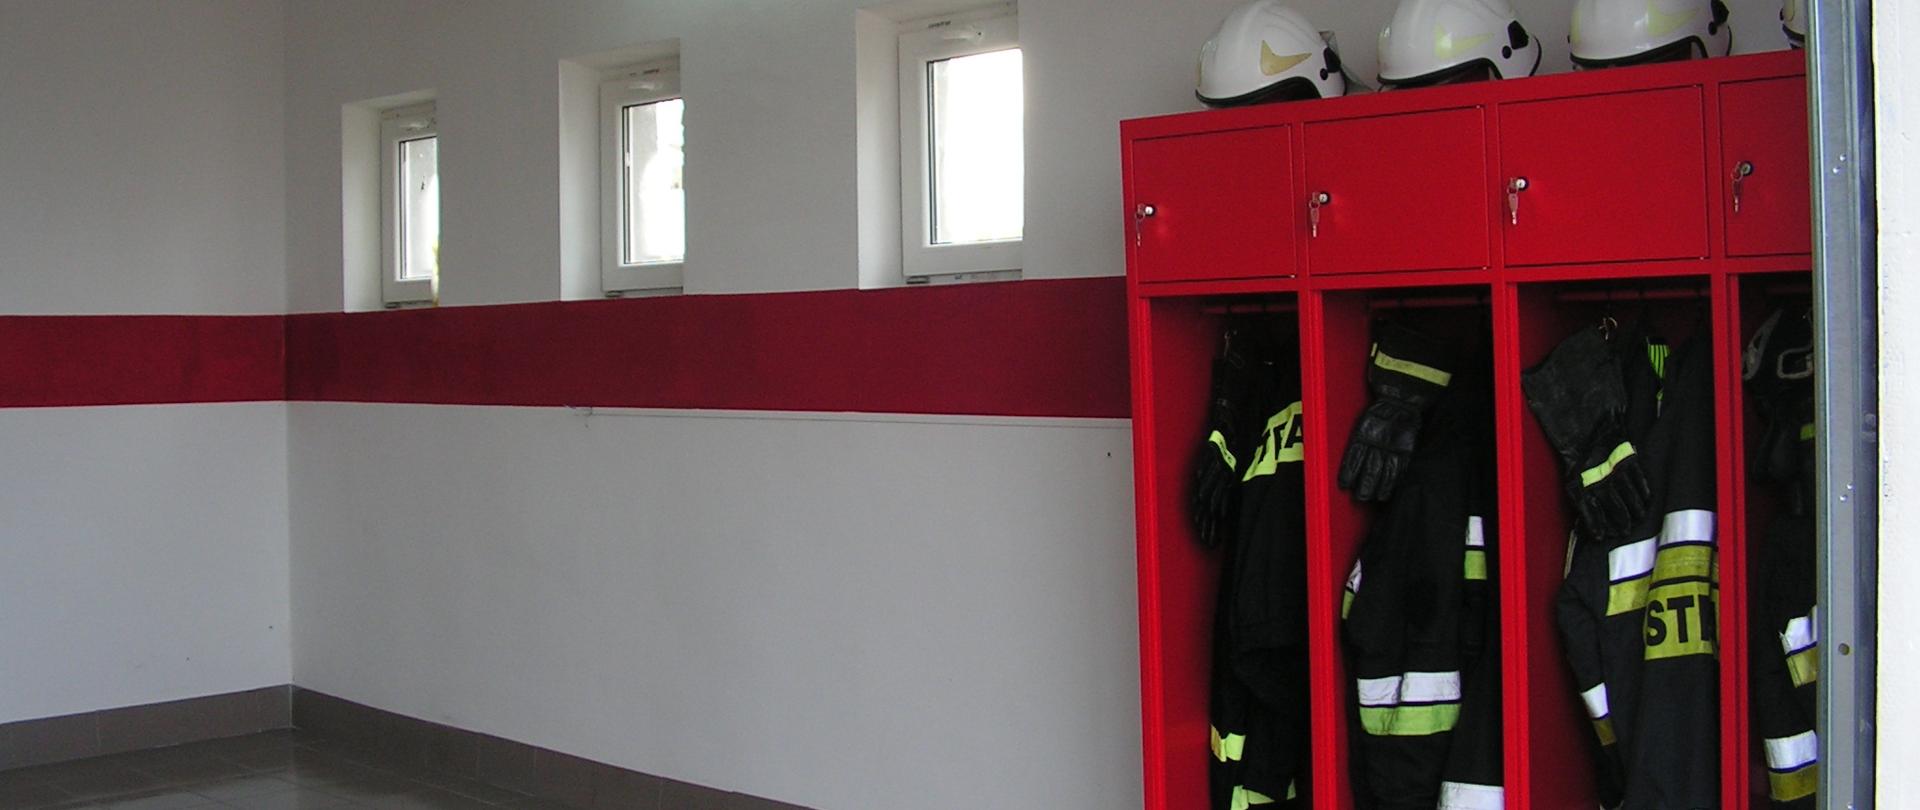 Na zdjęciu przedstawiono jedno z wyremontowanych pomieszczeń strażnicy OSP Jonne i OSP Chromakowo. Dominują kolory bieli i czerwieni. W prawym rogu mieści się czerwona szafa z ubraniami strażaków. Miejsce jest czyste i nowoczesne.